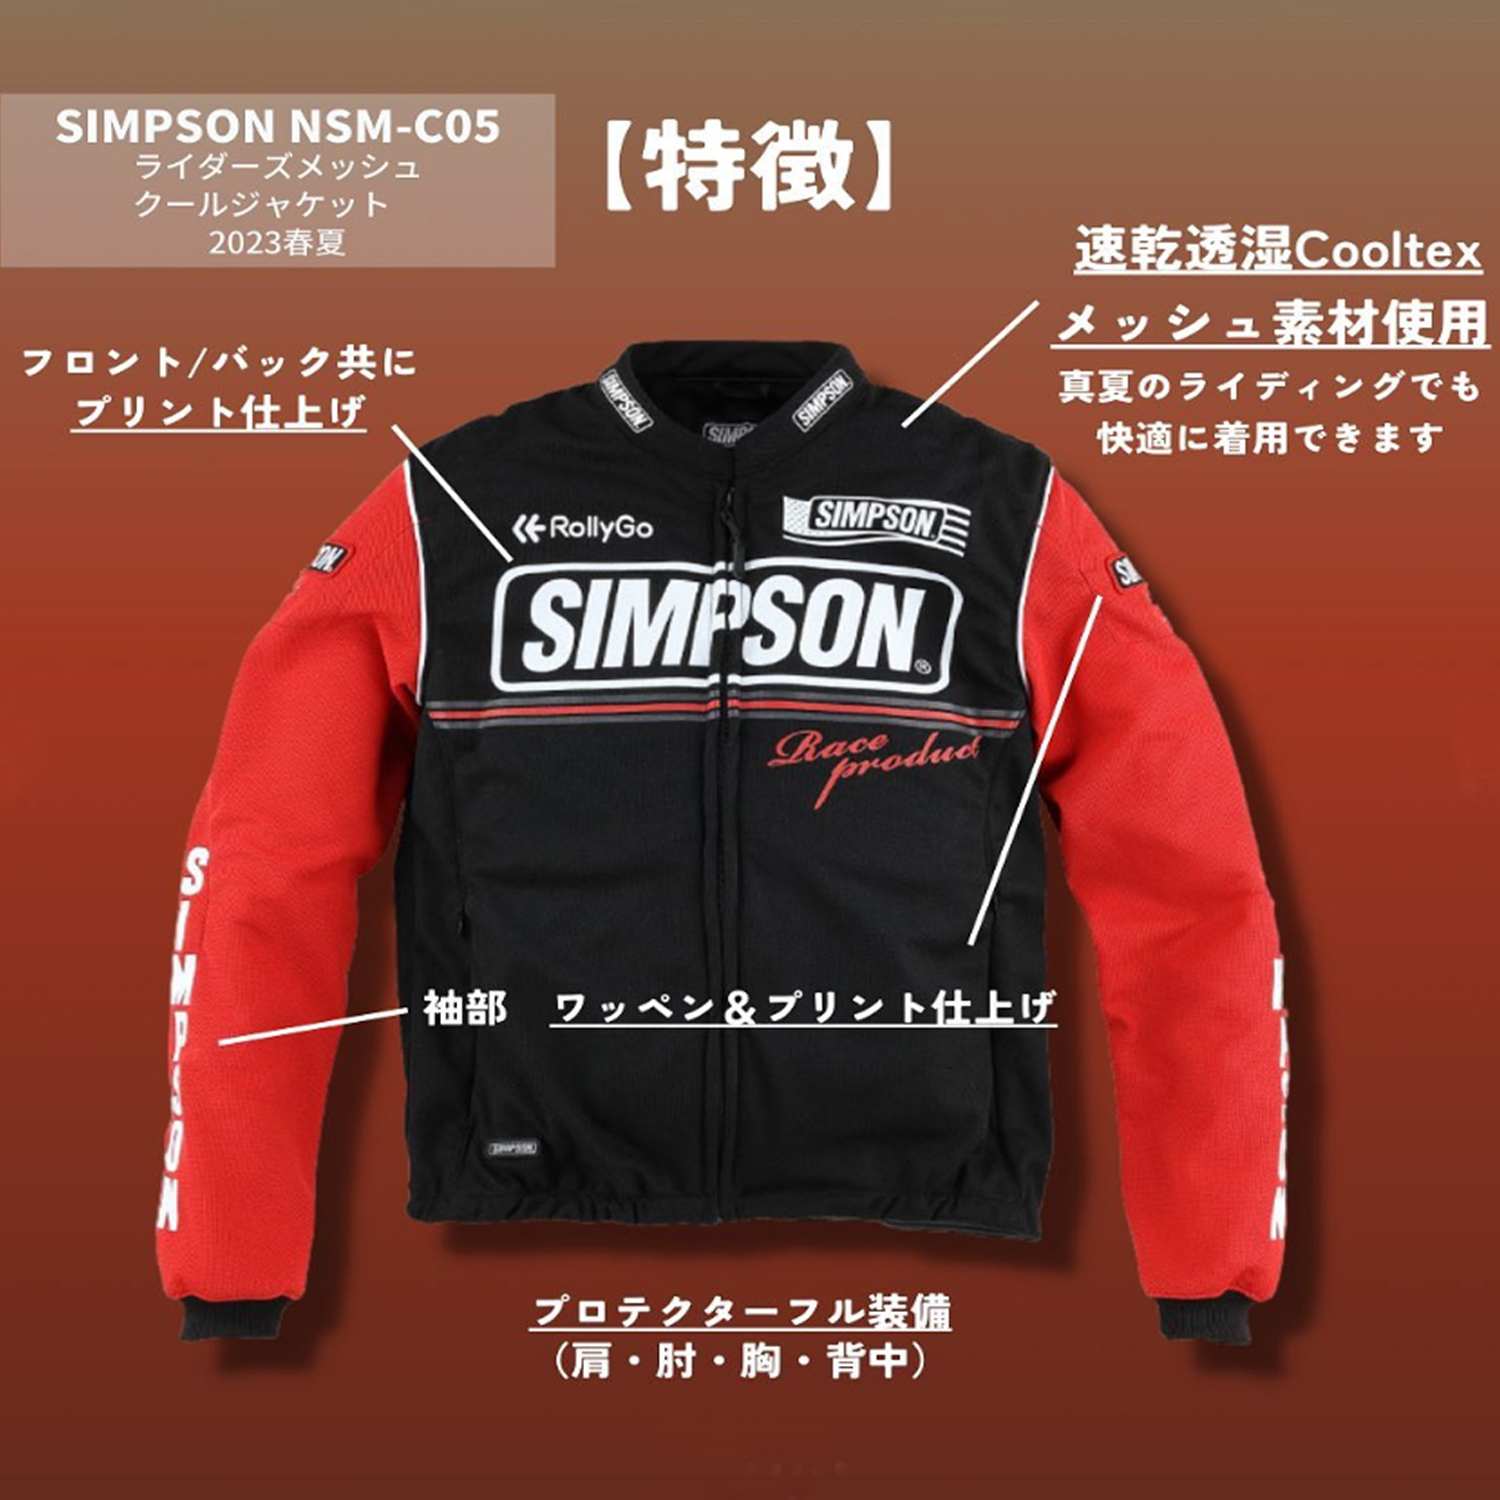 セール品 シンプソンジャケット 春夏モデル NSM-C08 Simpson 2023SS 